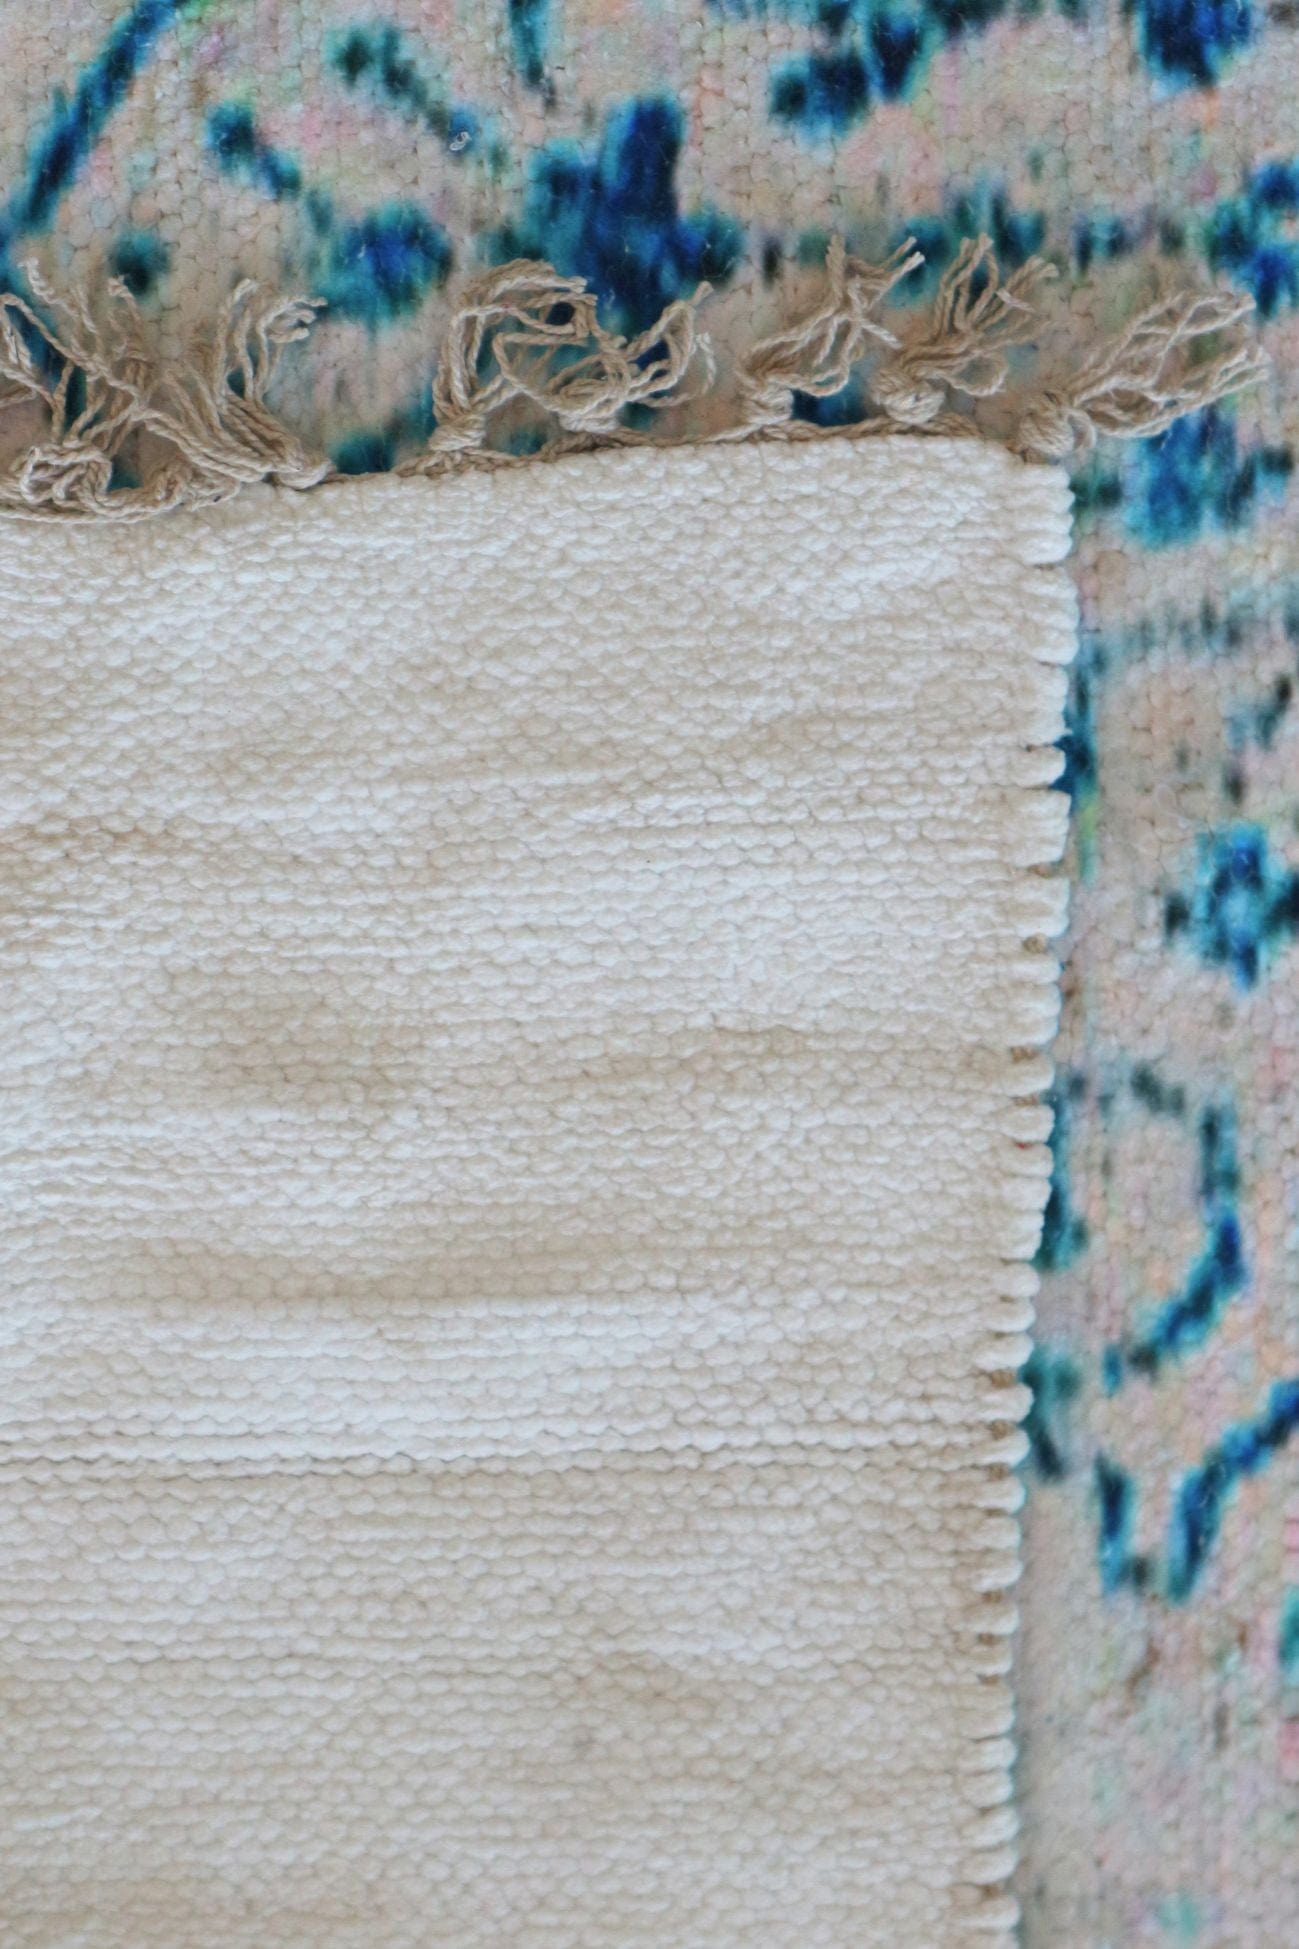 Item International Zariel Zariel - Tappeto in ciniglia di cotone azzurro con motivi etnici 120x180 | Item International